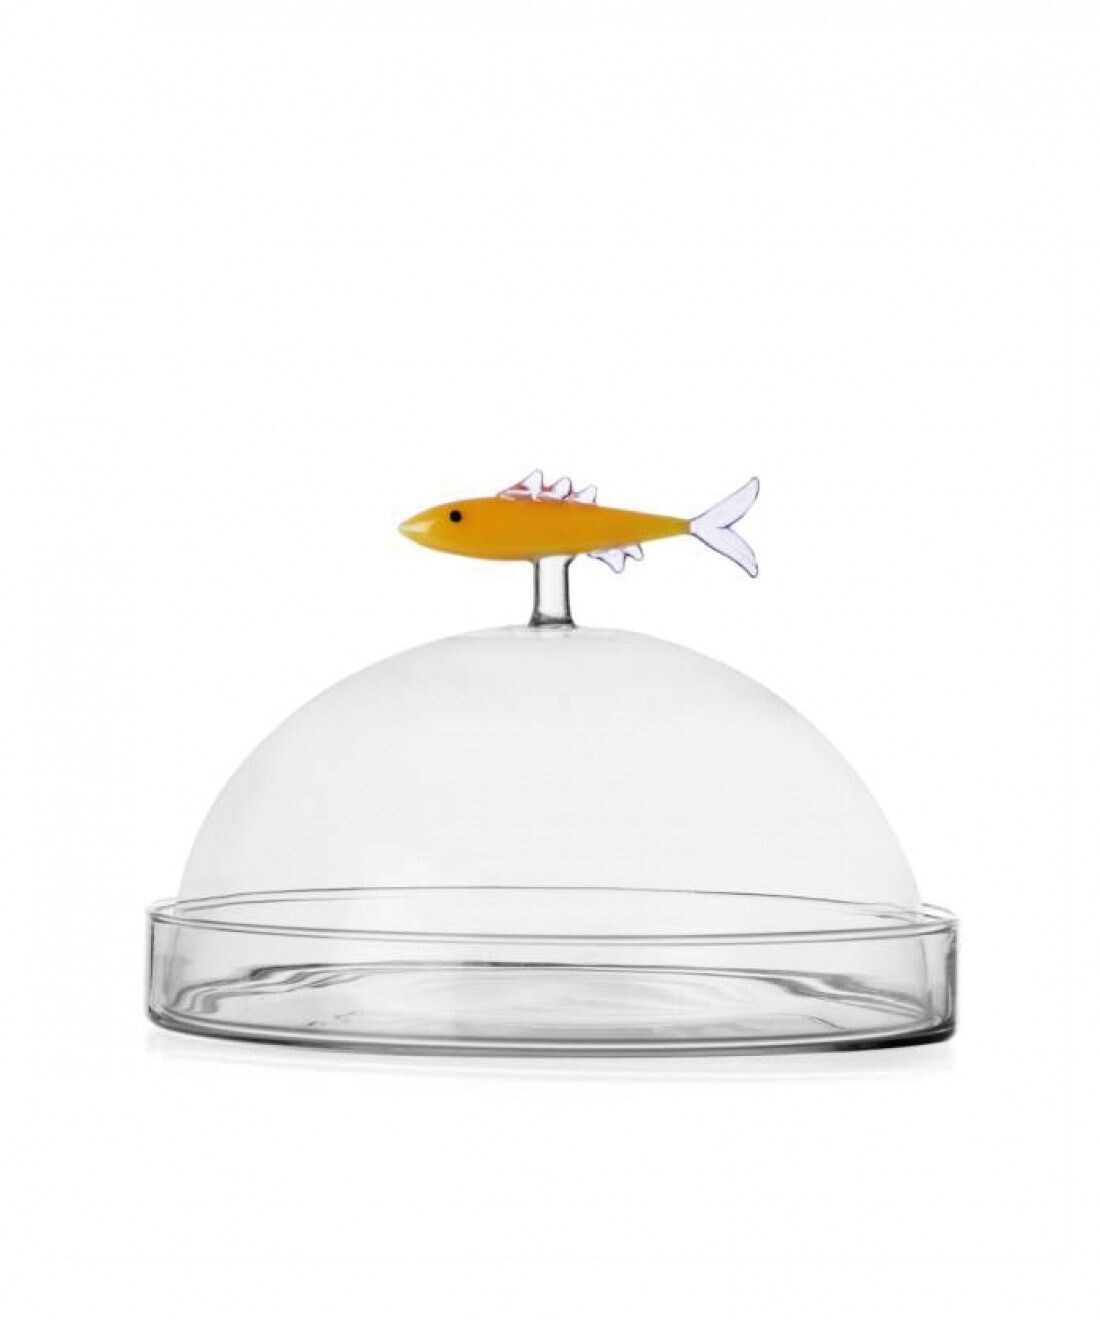 Cupola con piatto sardina - MARINE GARDEN